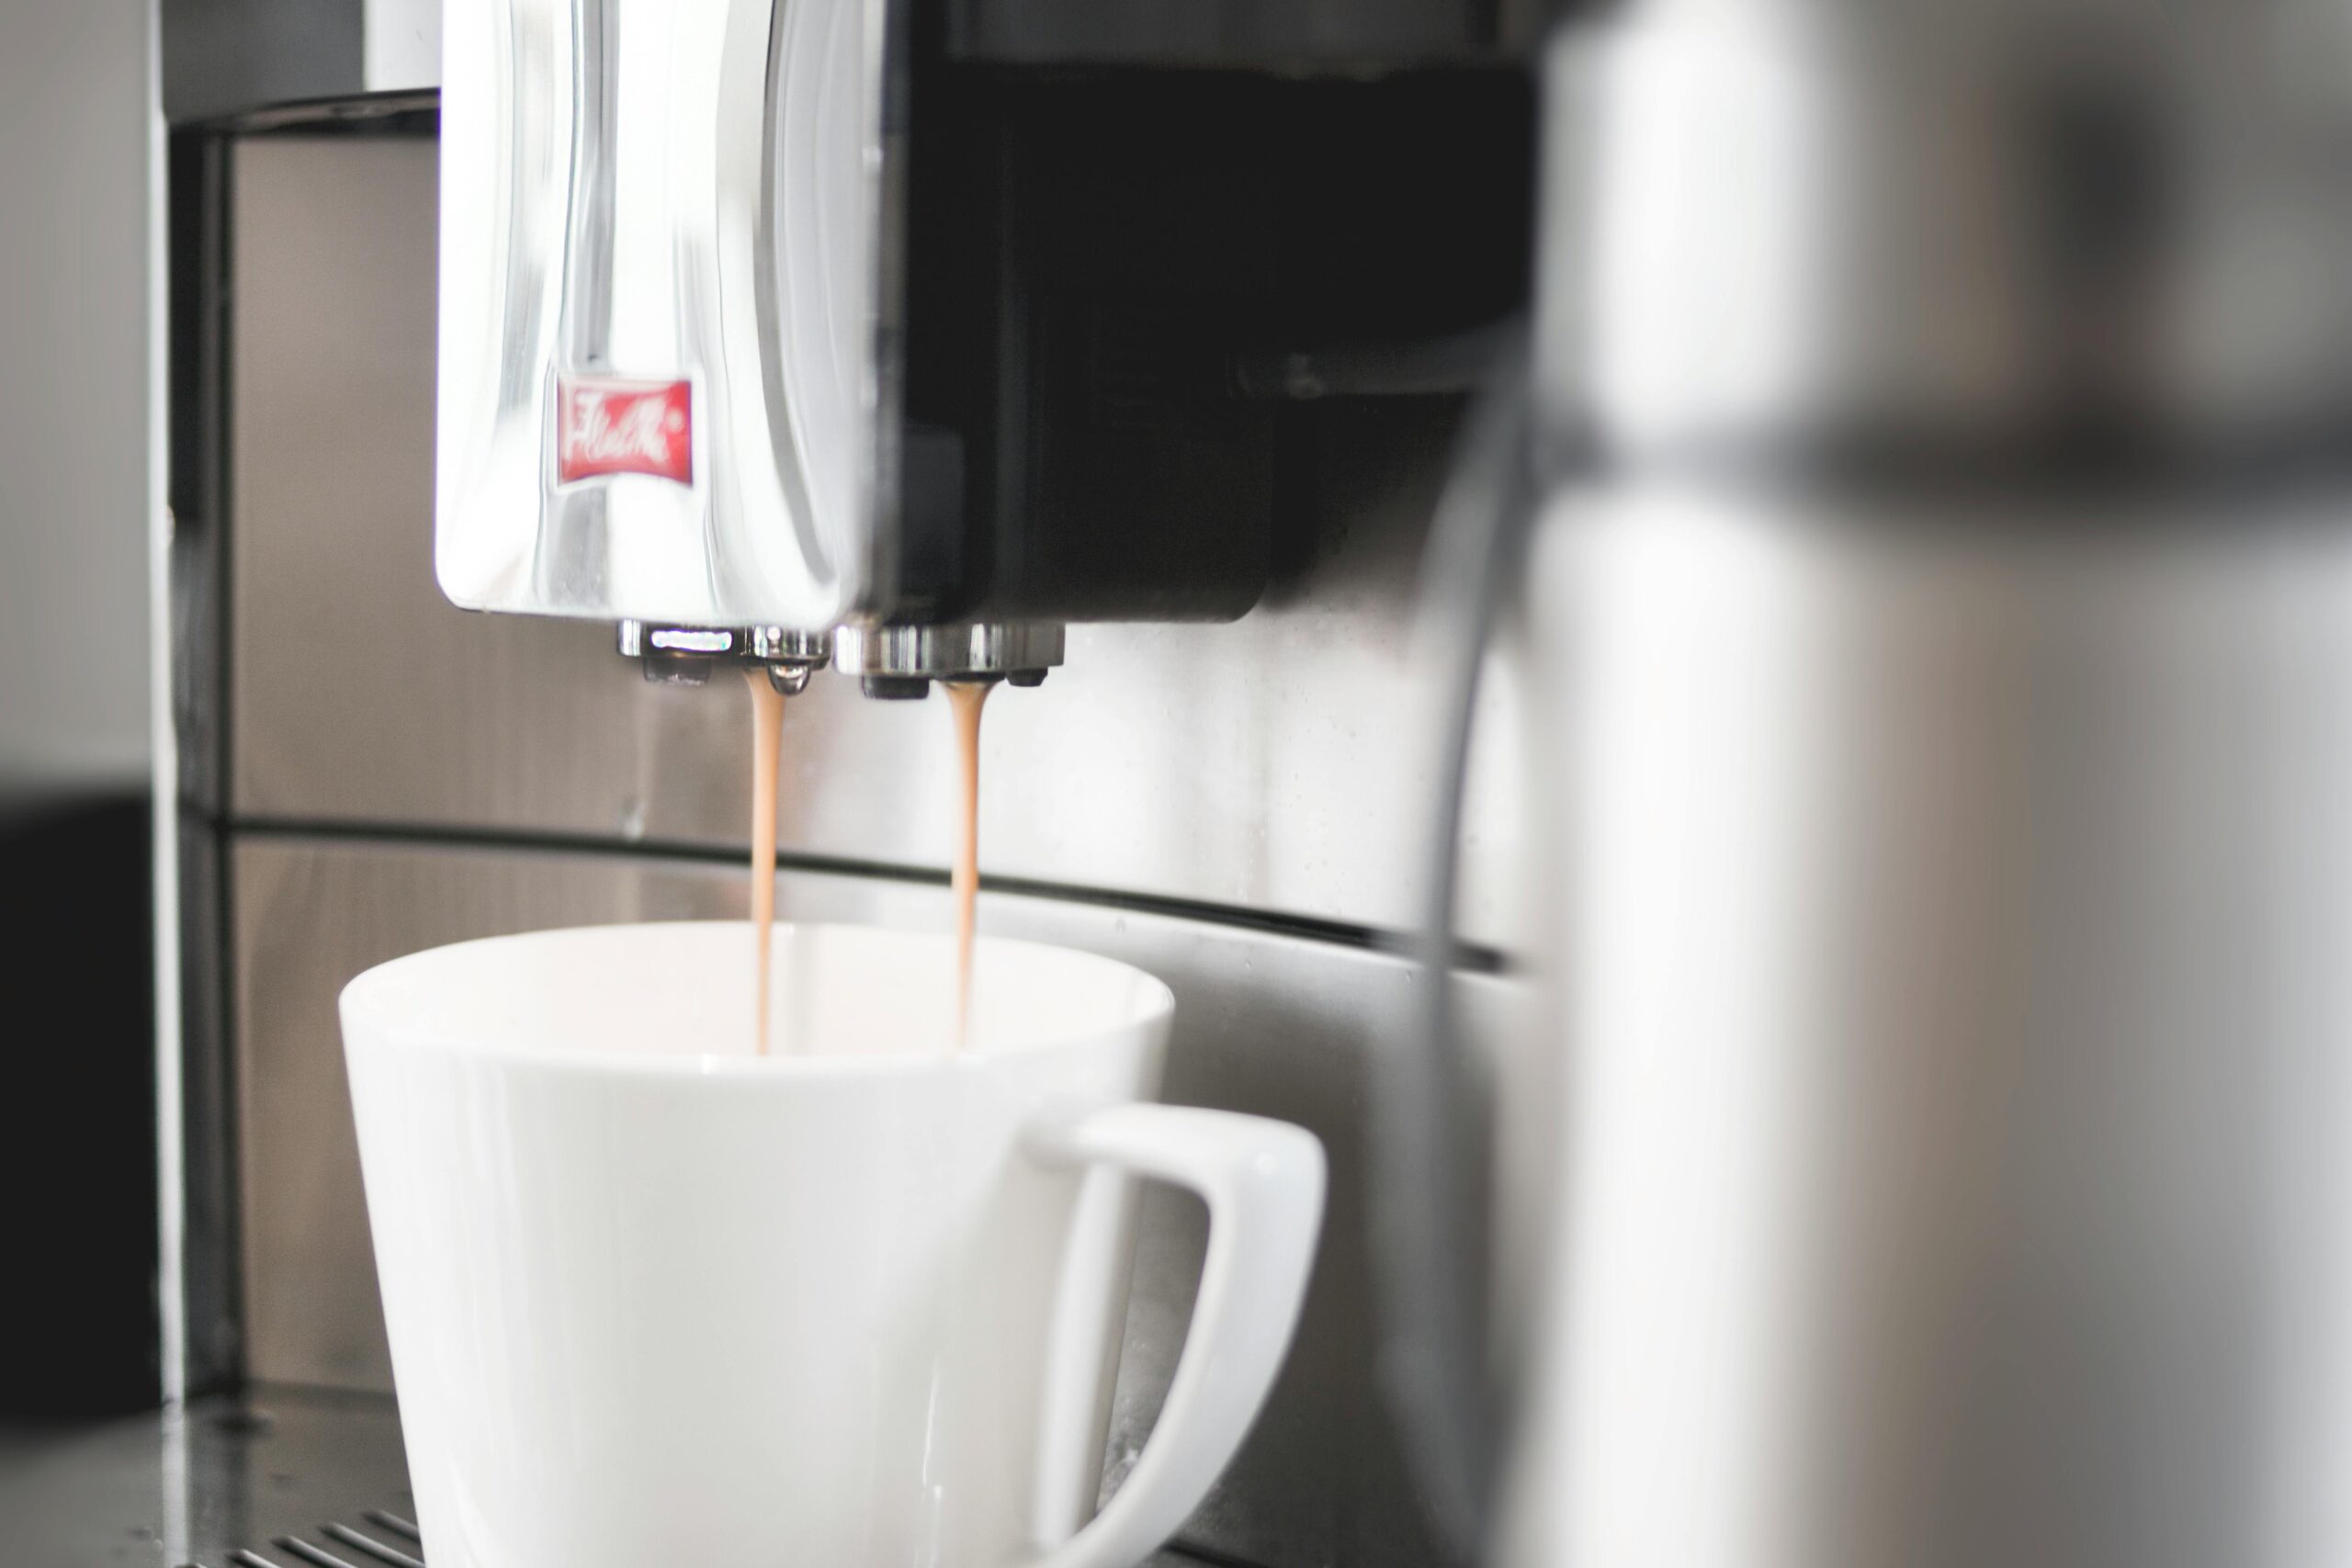 Kaffeevollautomat reinigen - so geht's mit Hausmitteln